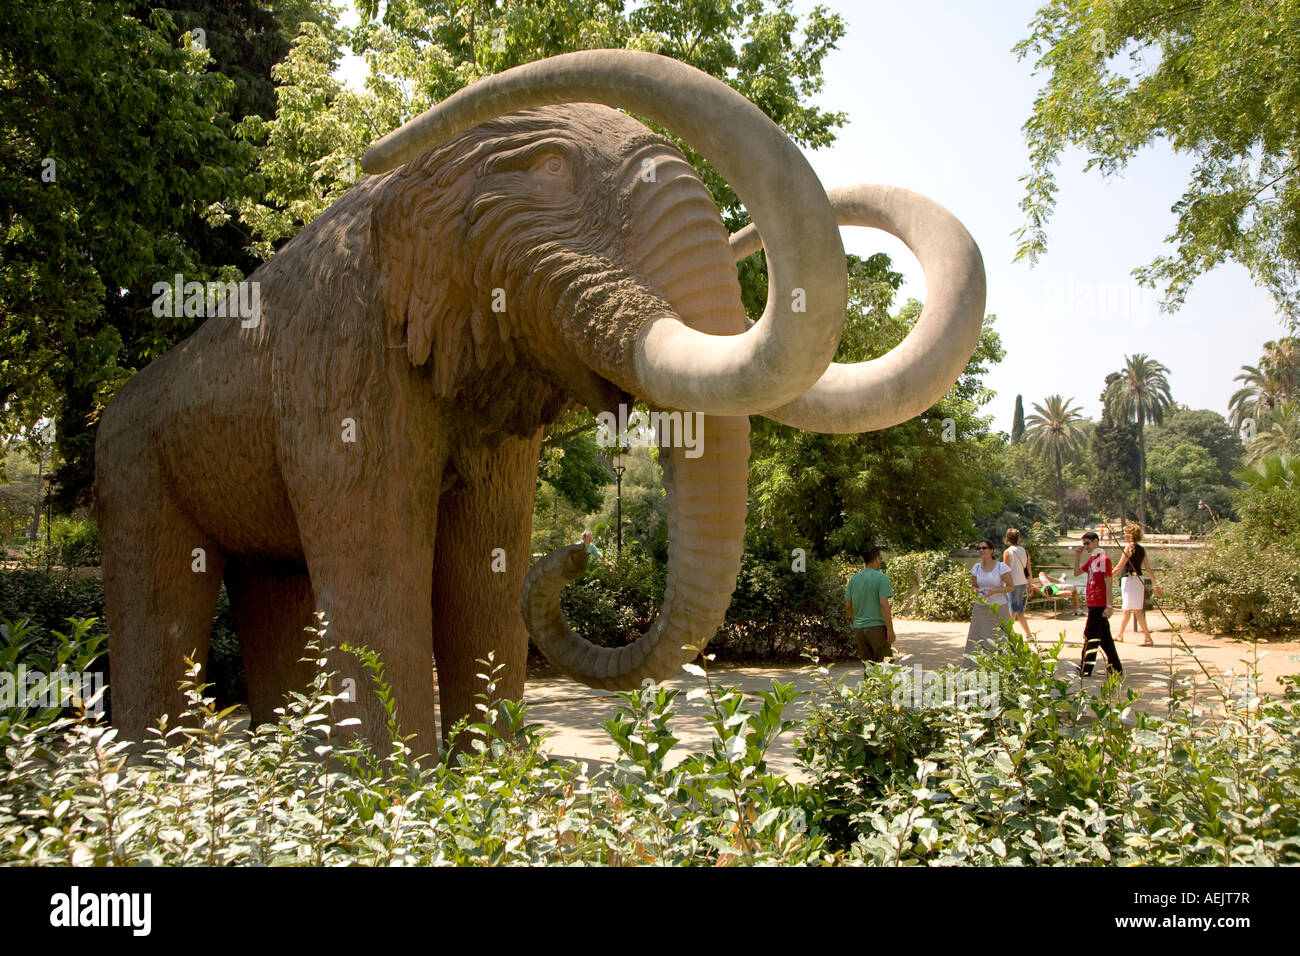 Statue of a mammoth, Parc de la Ciutadella, Barcelona, Catalonia, Spain Stock Photo